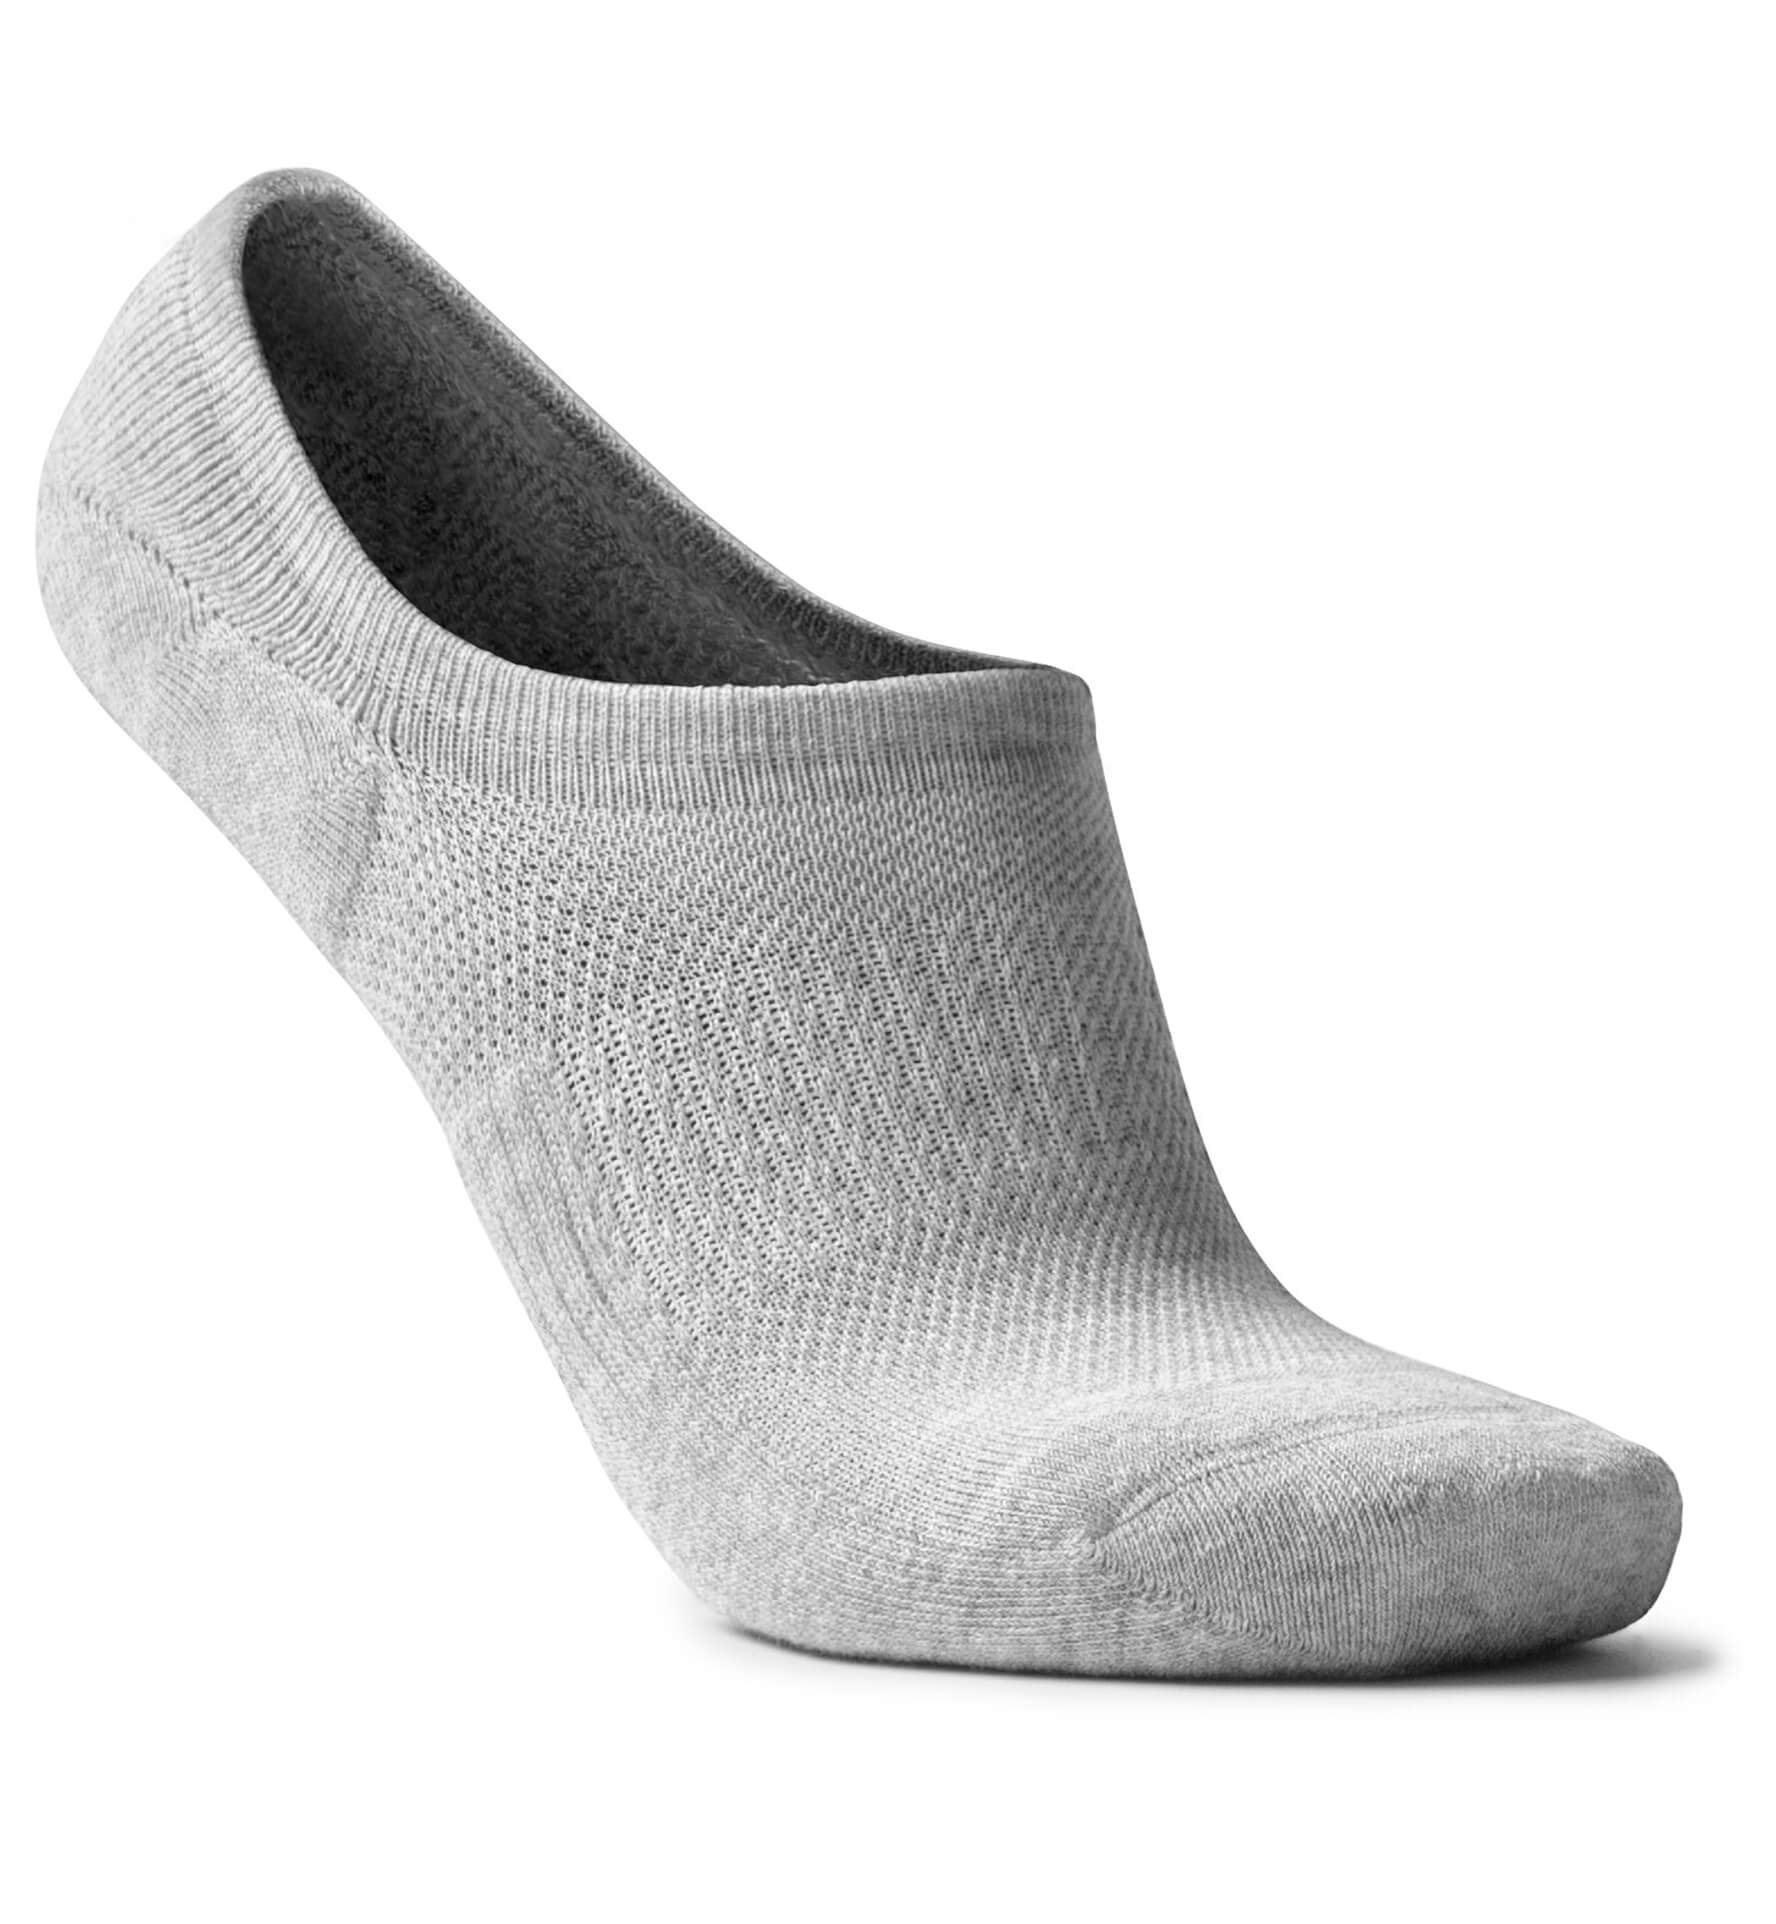 Proper Cloth No-Show Sock